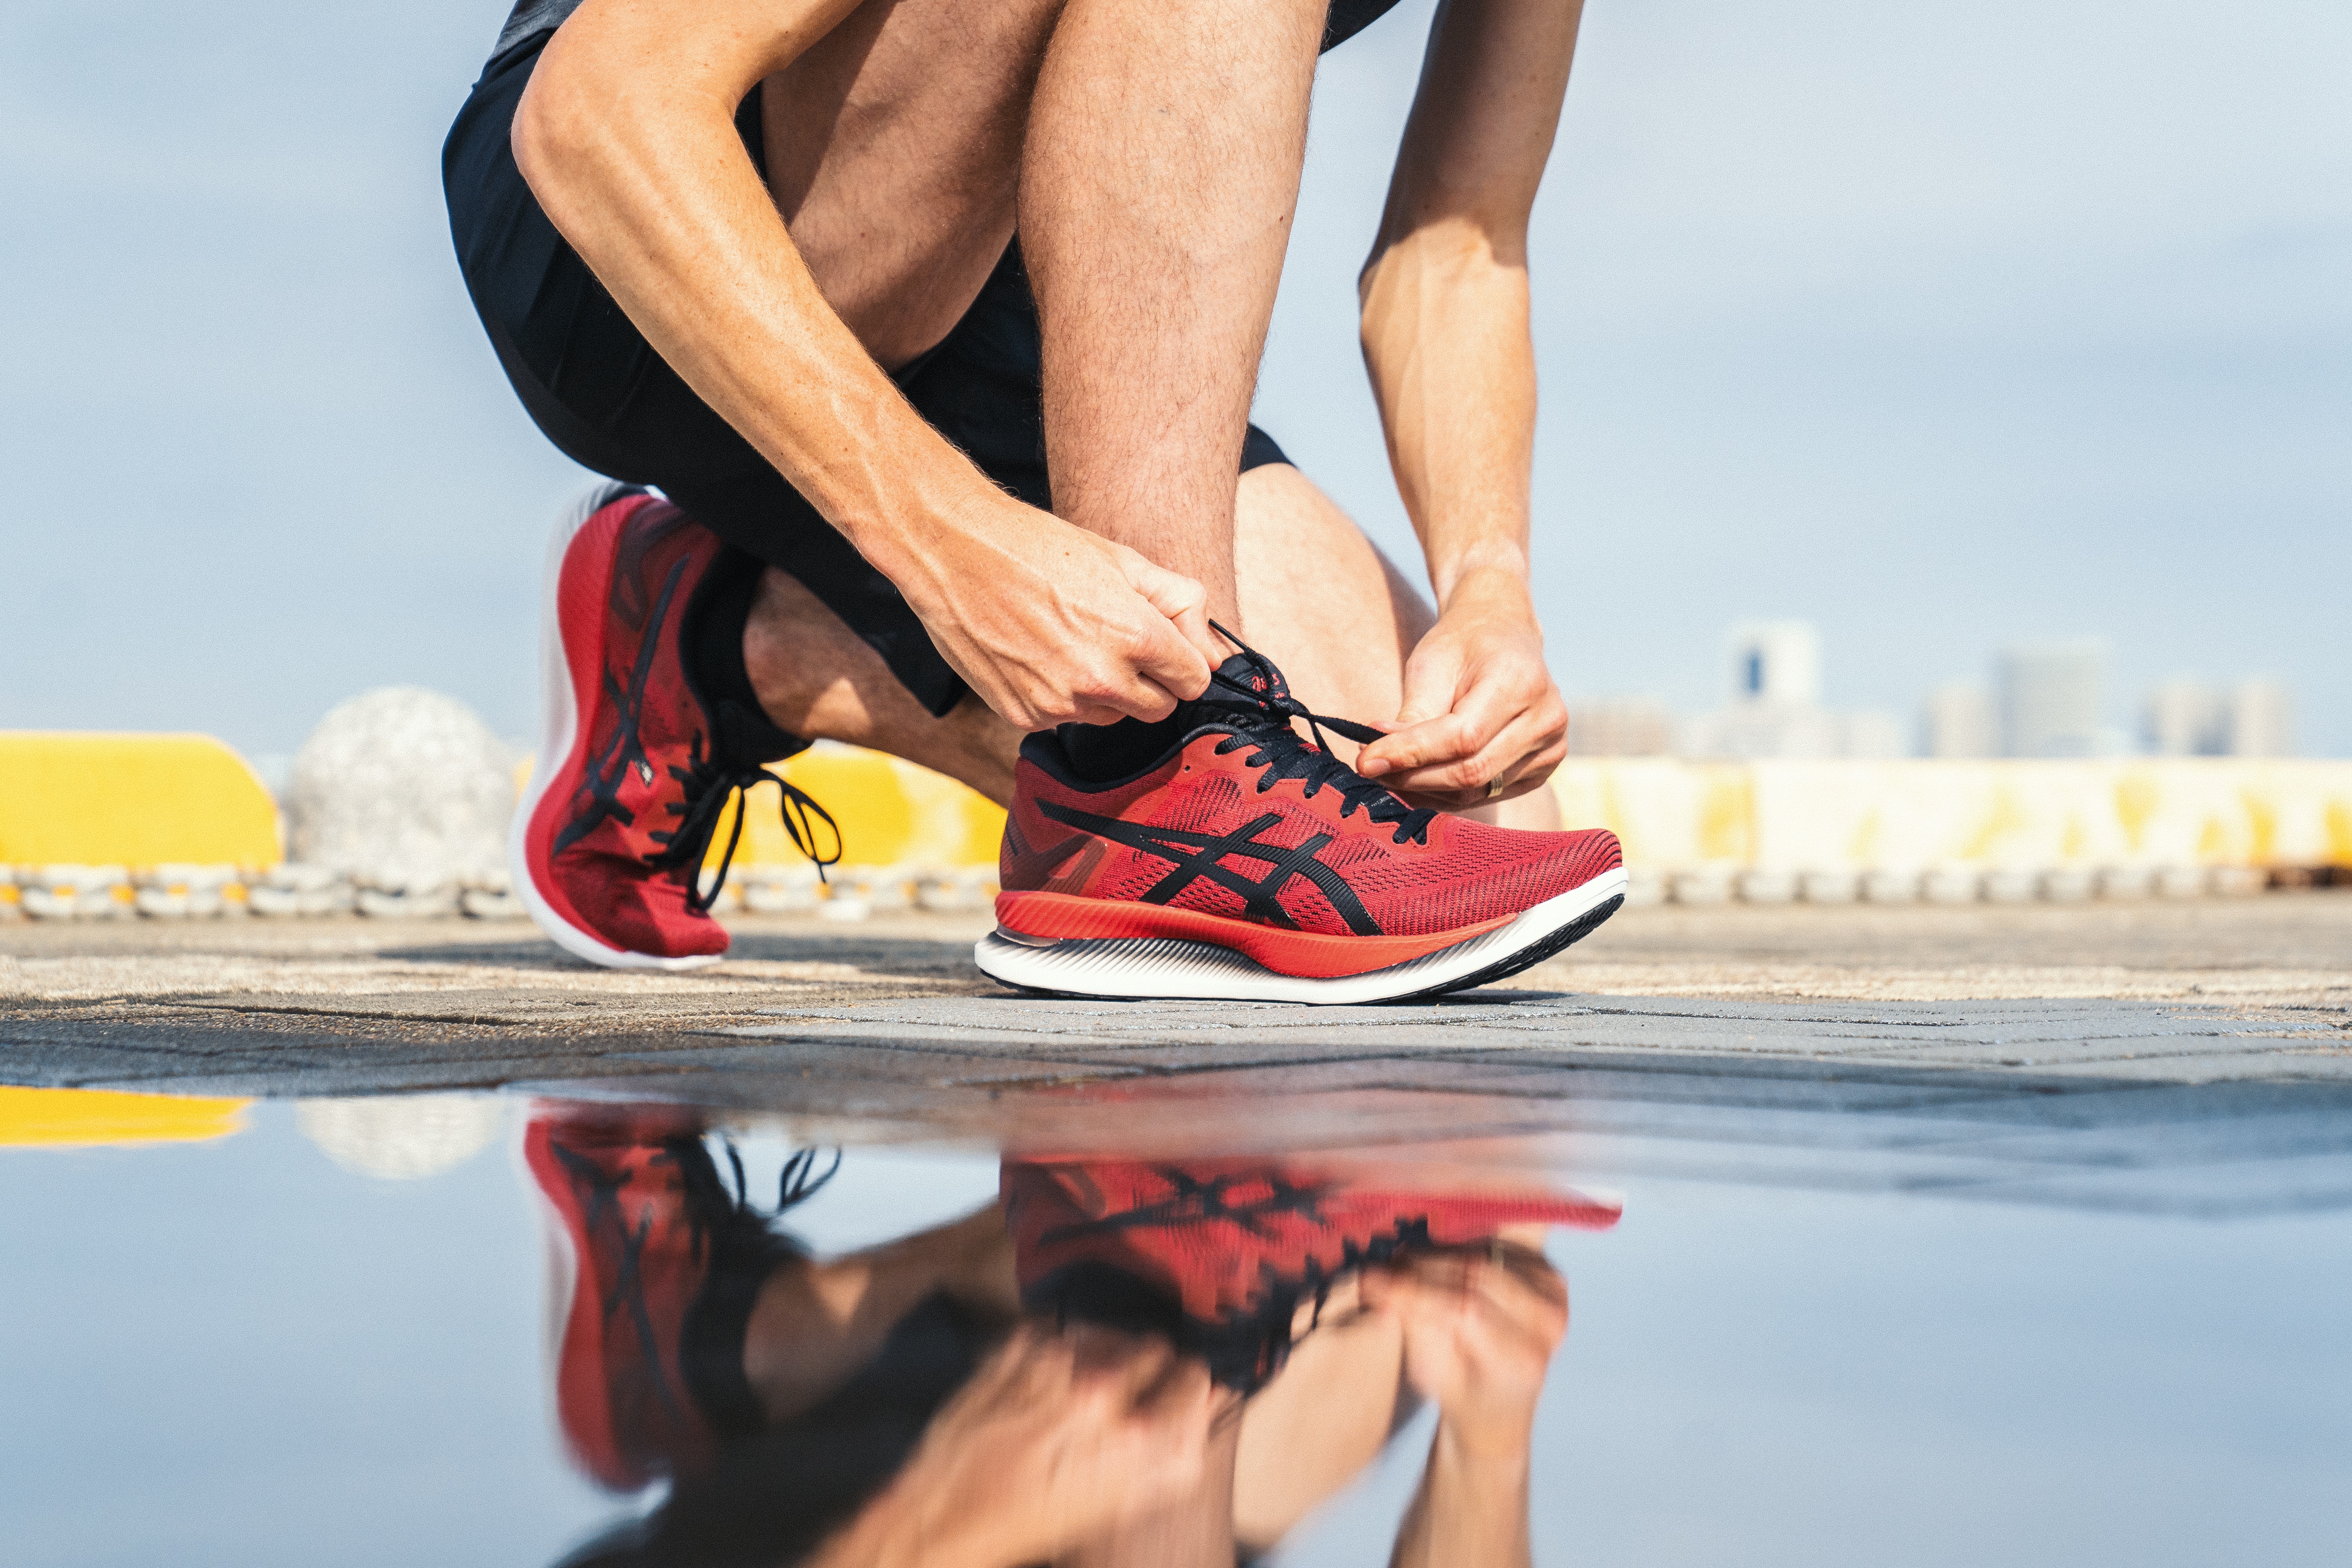 La zapatilla Metaride de Asics creada por científicos para correr más